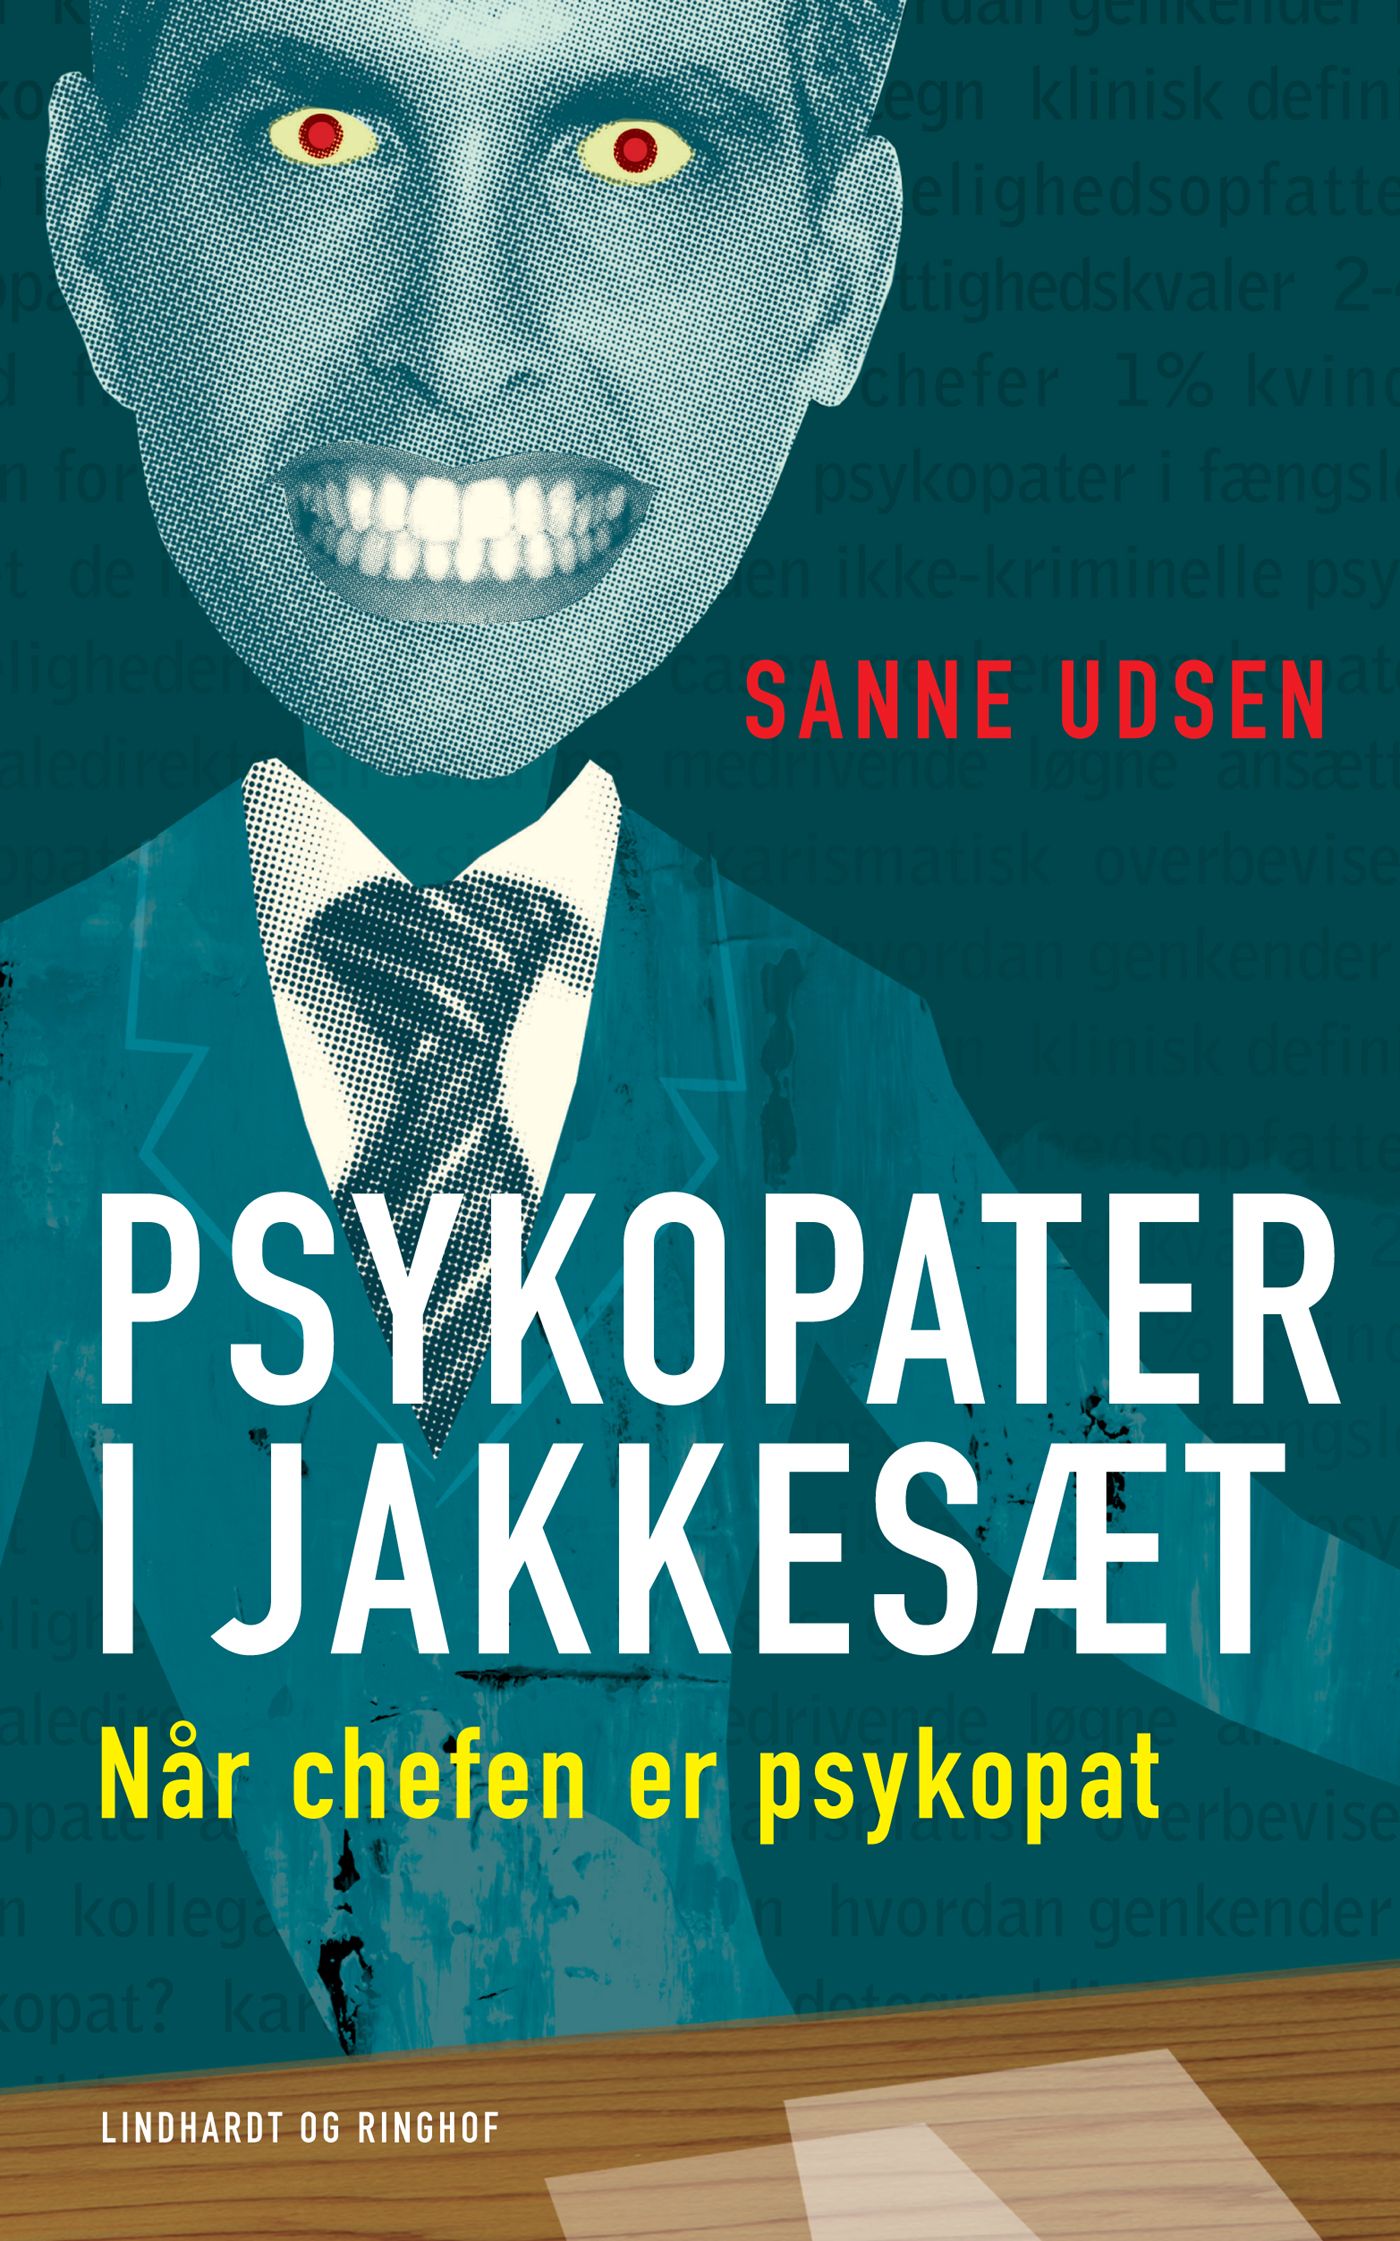 Psykopater i jakkesæt, e-bog af Sanne Udsen